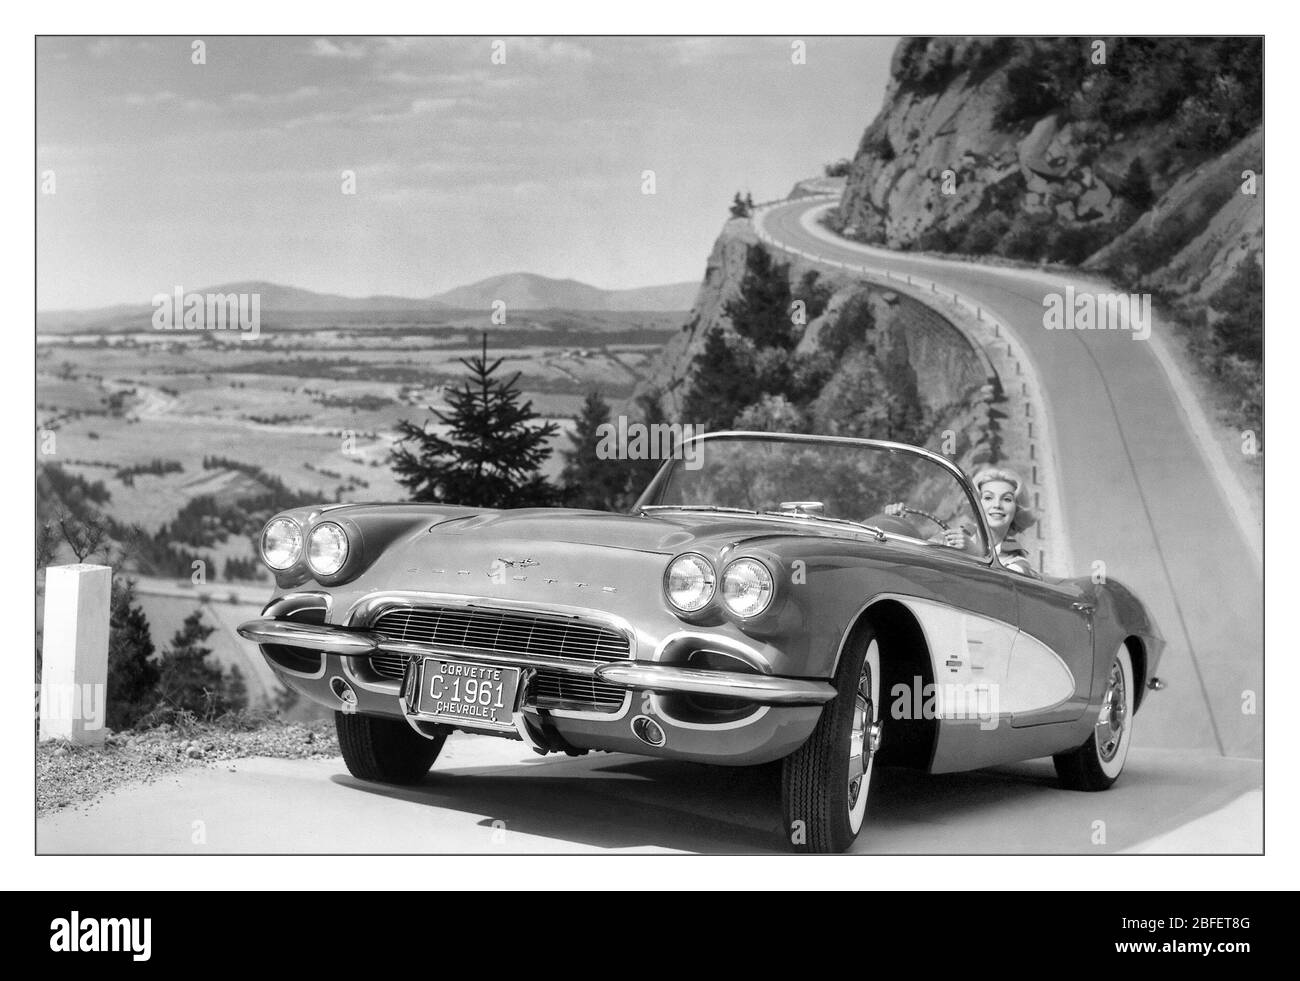 Chevrolet Corvette 1961 offene Top 2-Sitzer Sportwagen Motorwagen Produkt Bild Foto mit Modell im Freien gewundenen bergigen Straße Lifestyle-Situation Stockfoto